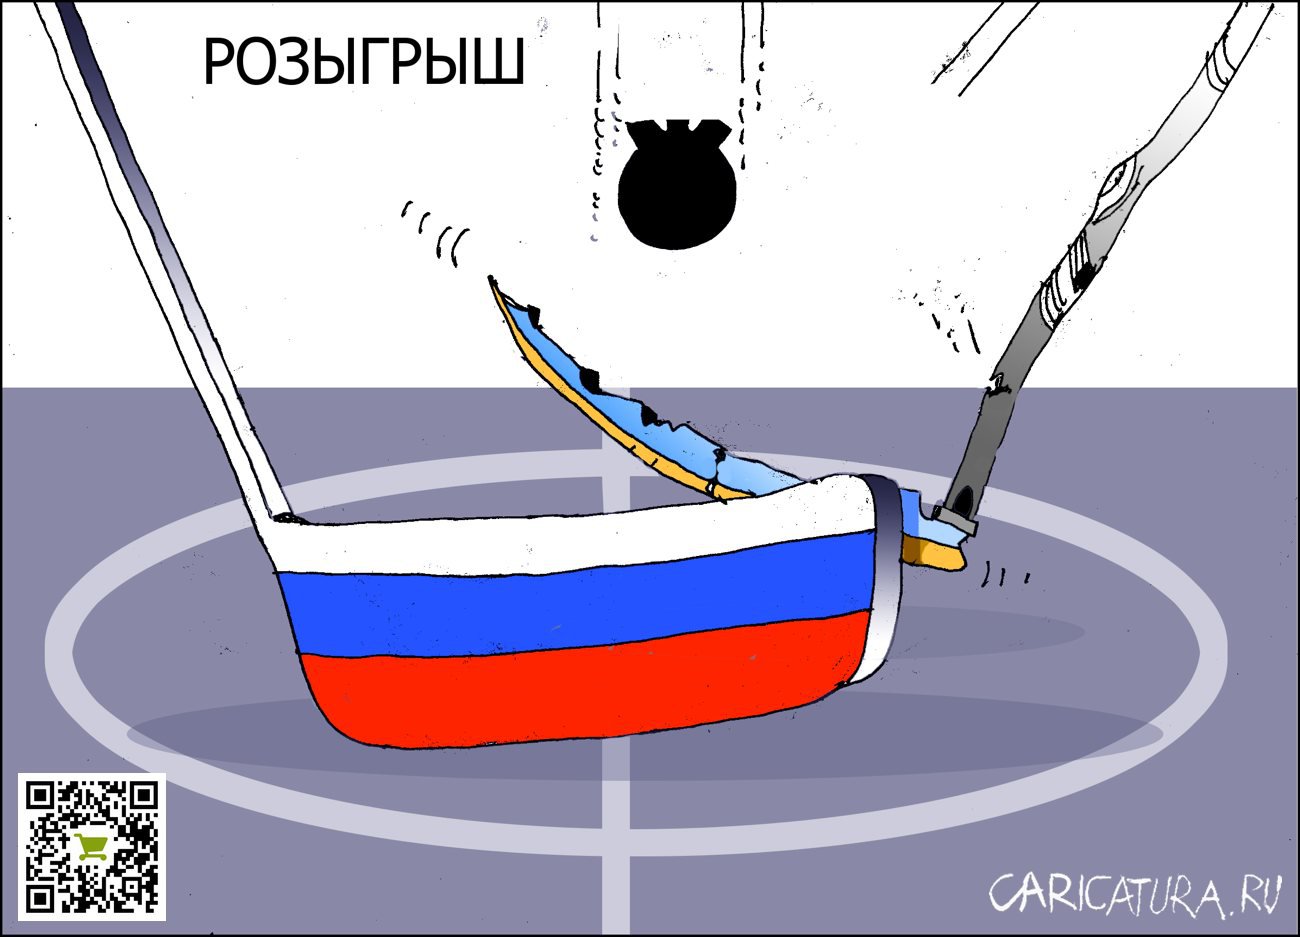 Карикатура "Розыгрыш", Александр Уваров